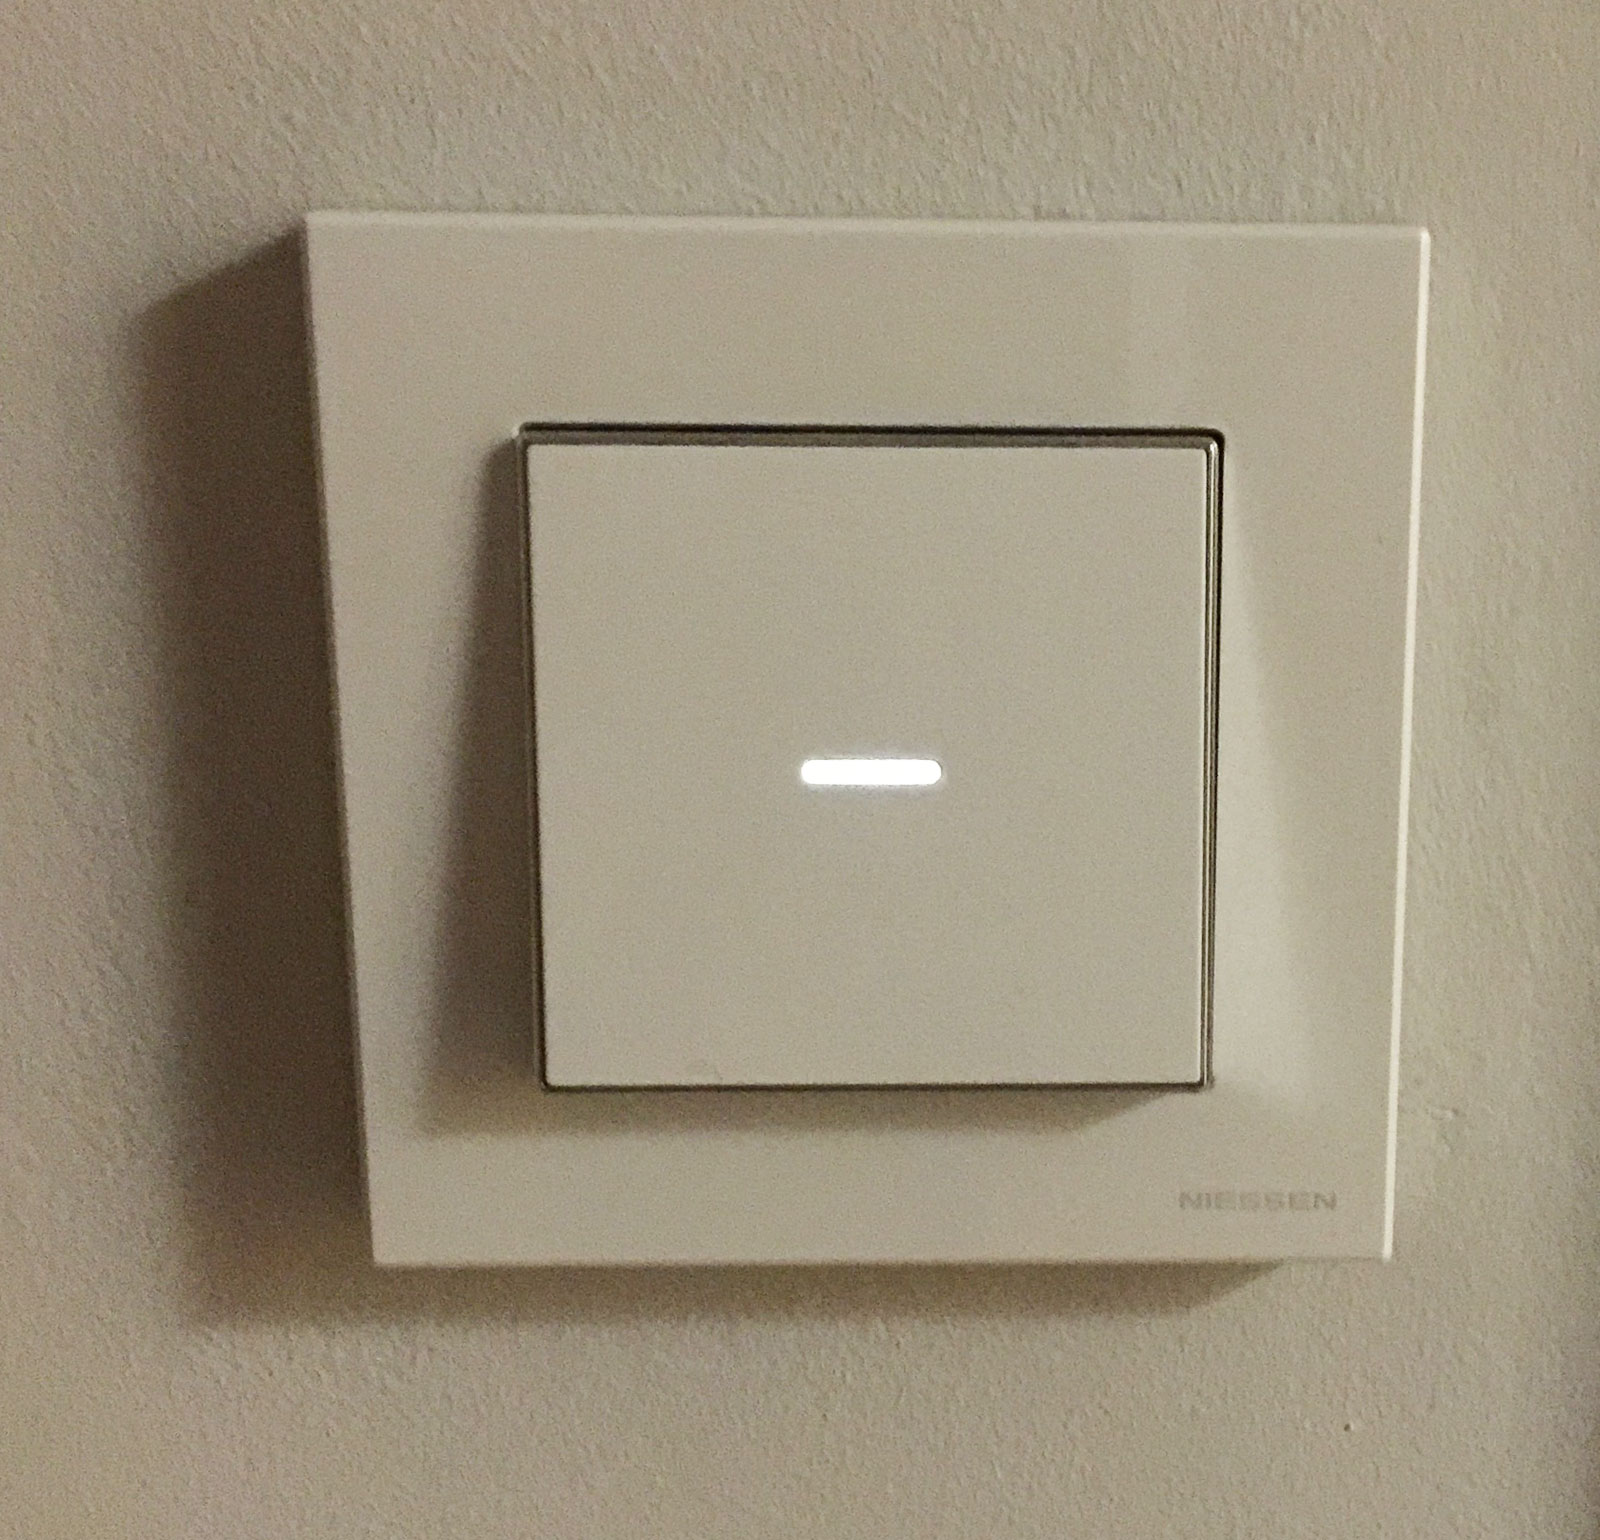 Interruptores con LED